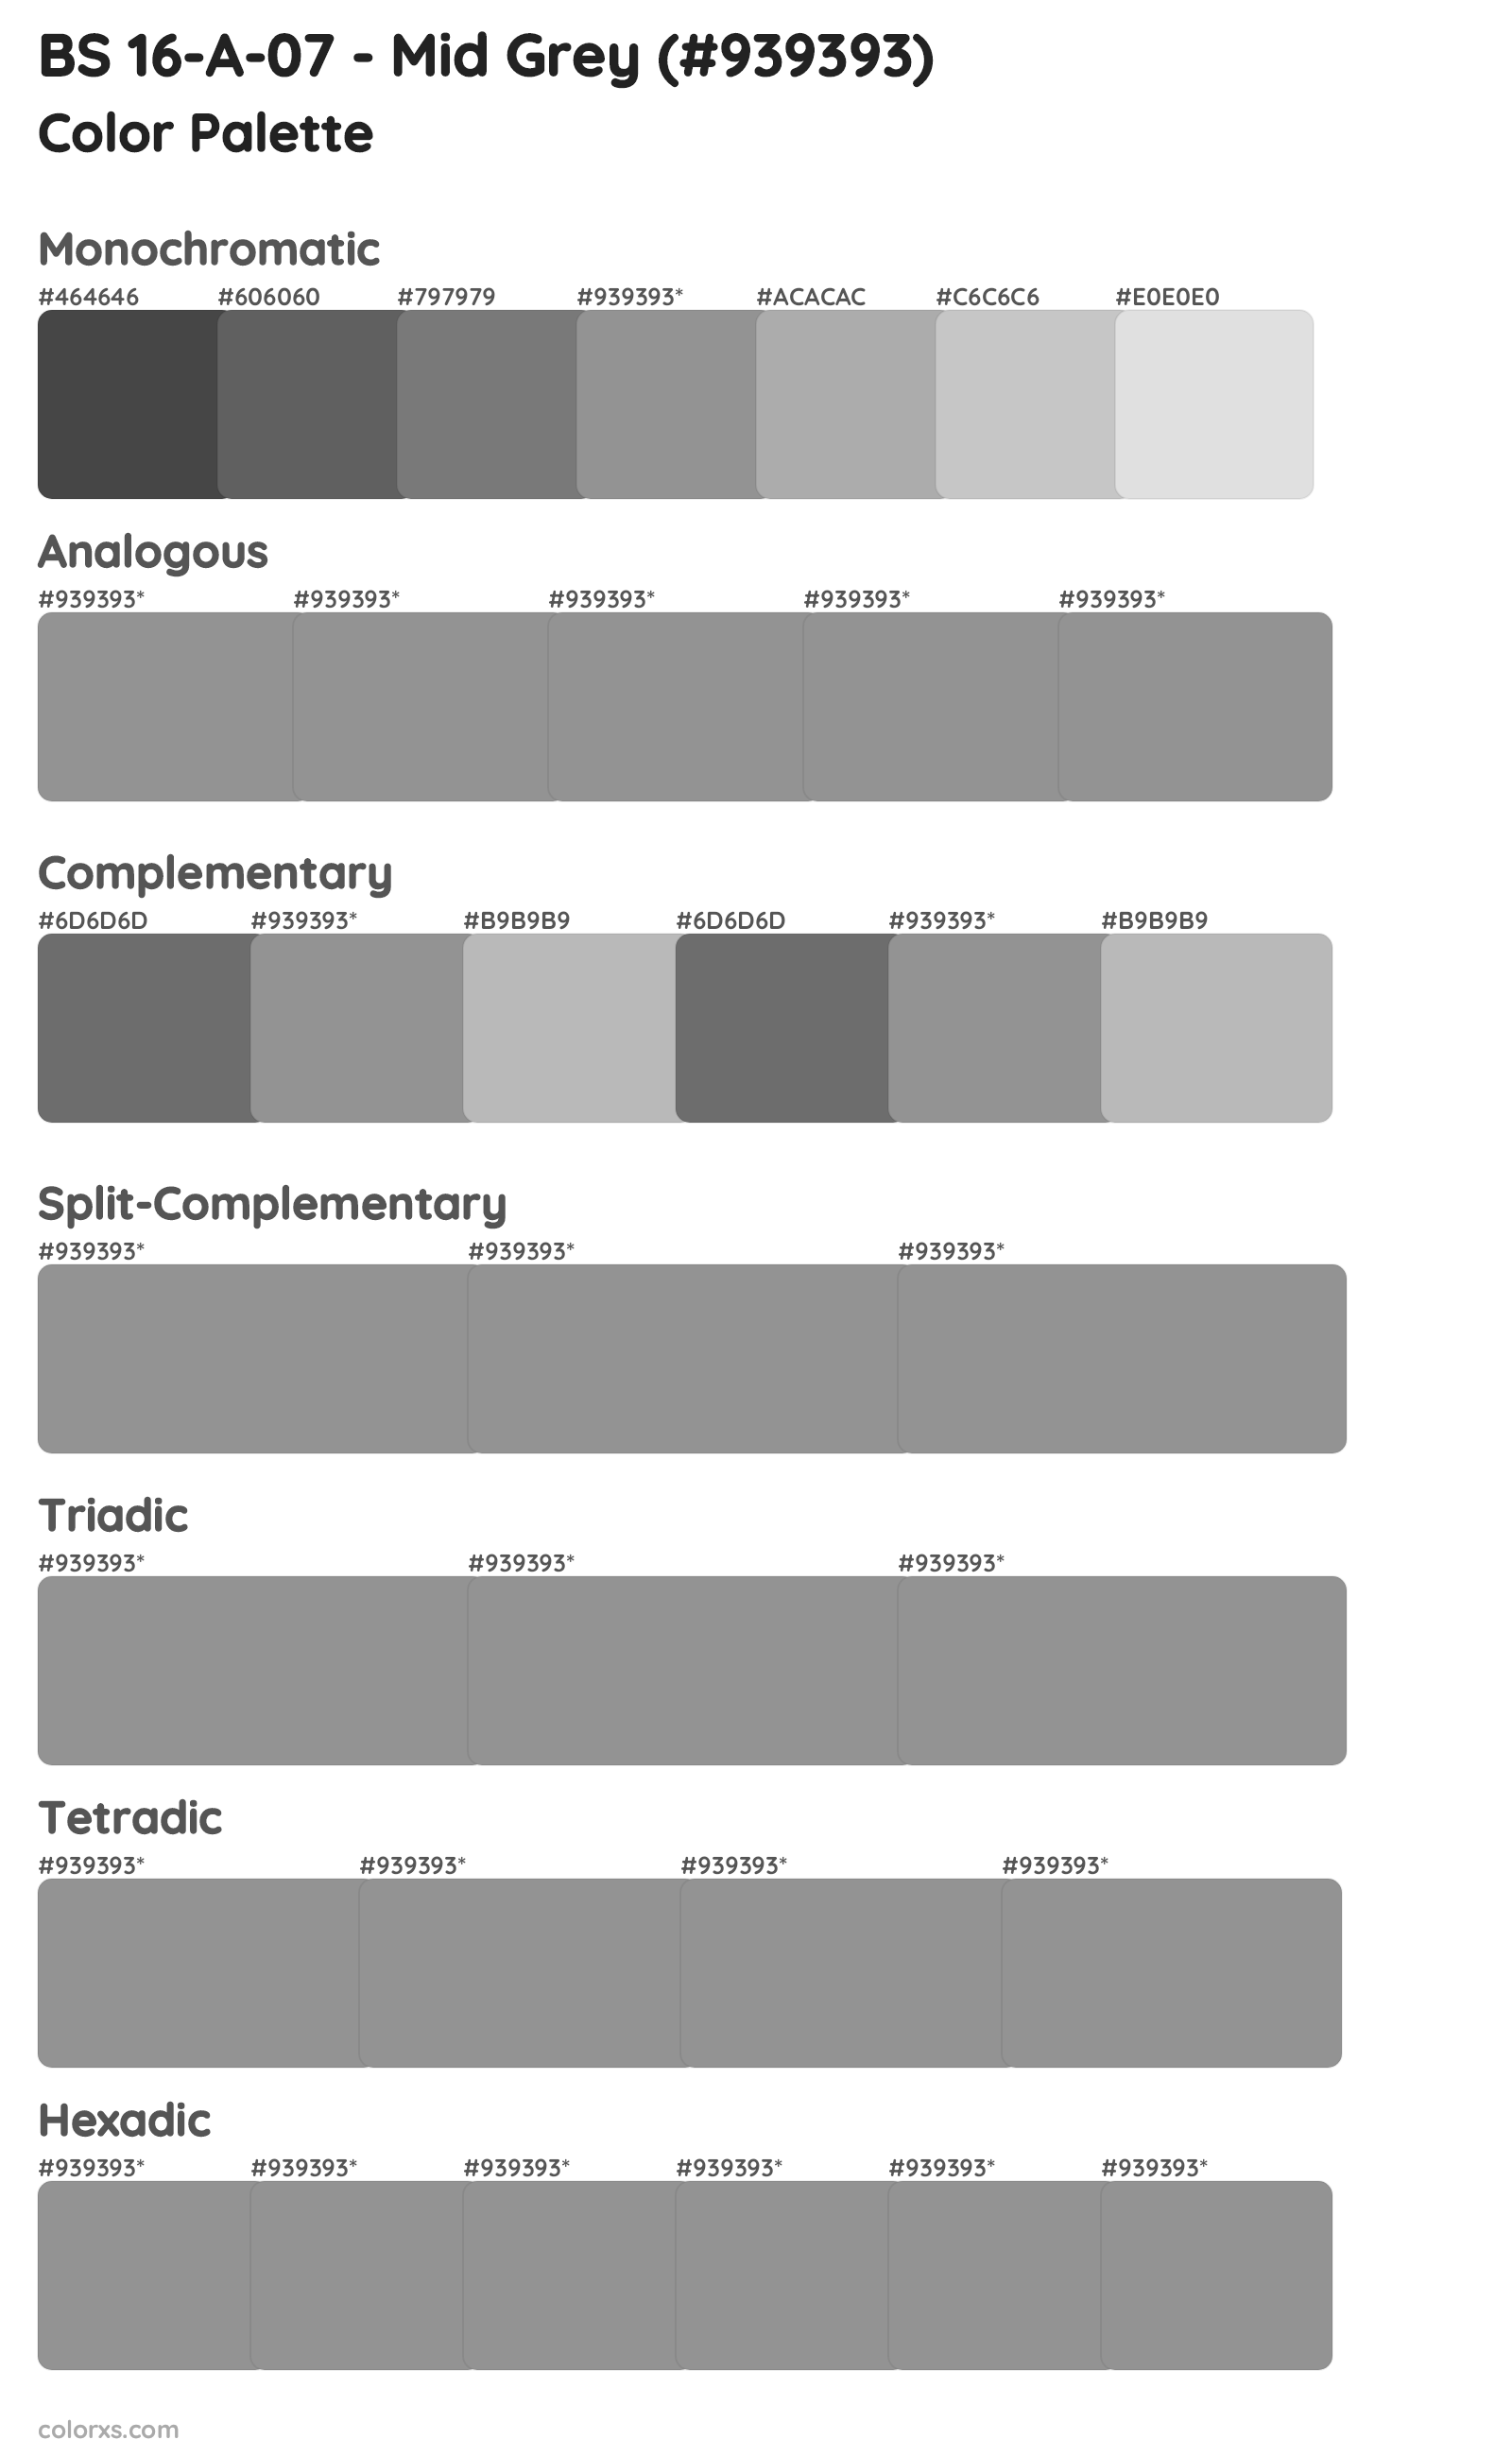 BS 16-A-07 - Mid Grey Color Scheme Palettes